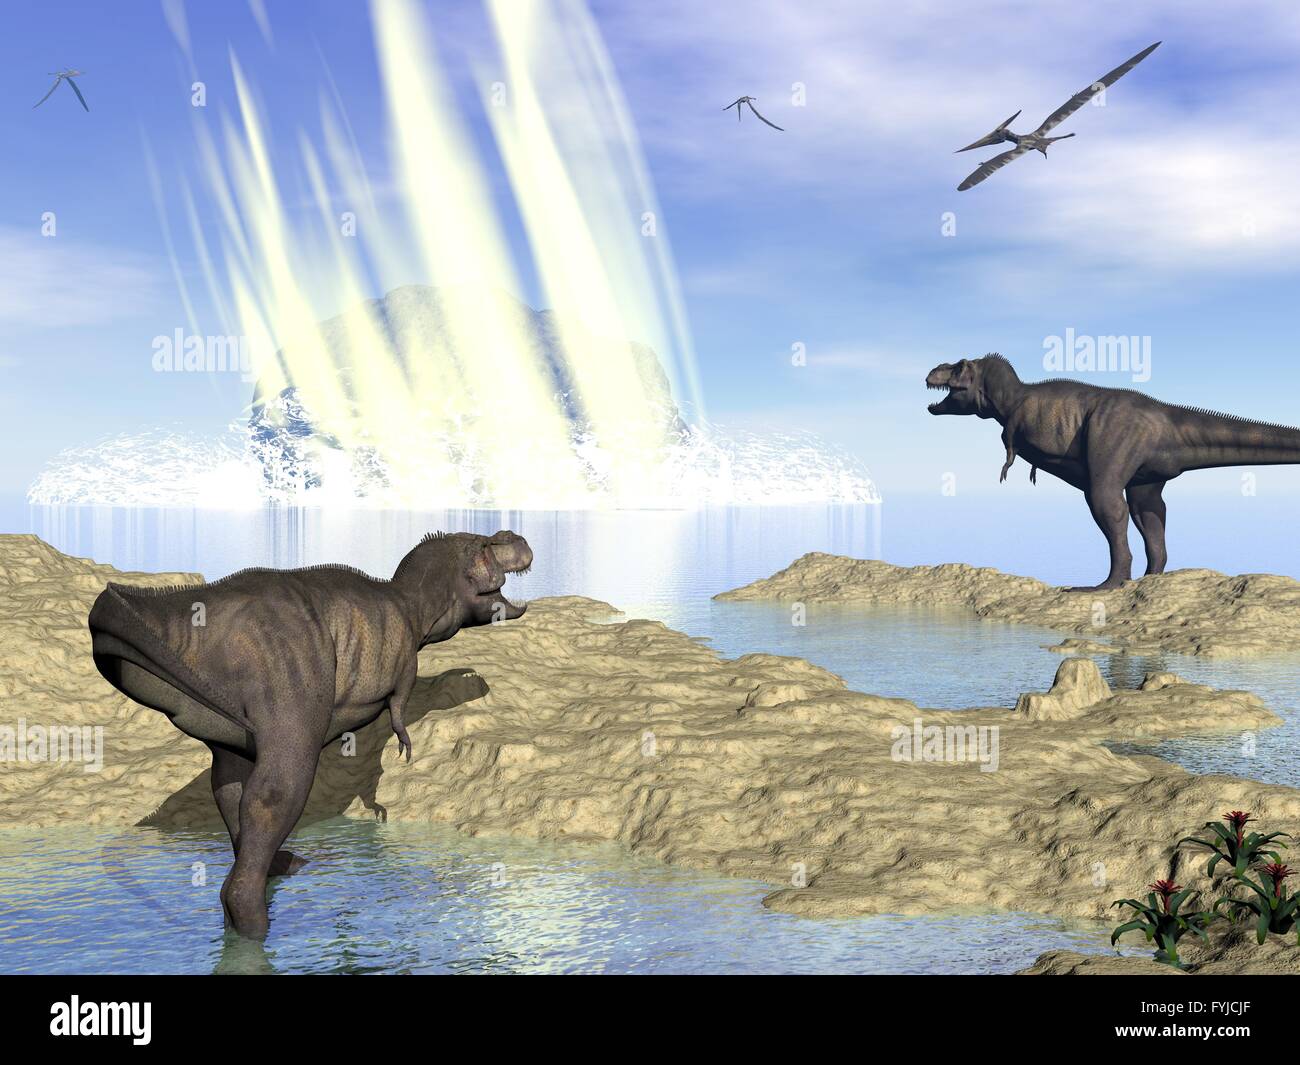 Fin des dinosaures en raison de l'impact de météorite dans la région de Yucatan, Mexique - 3D render Banque D'Images